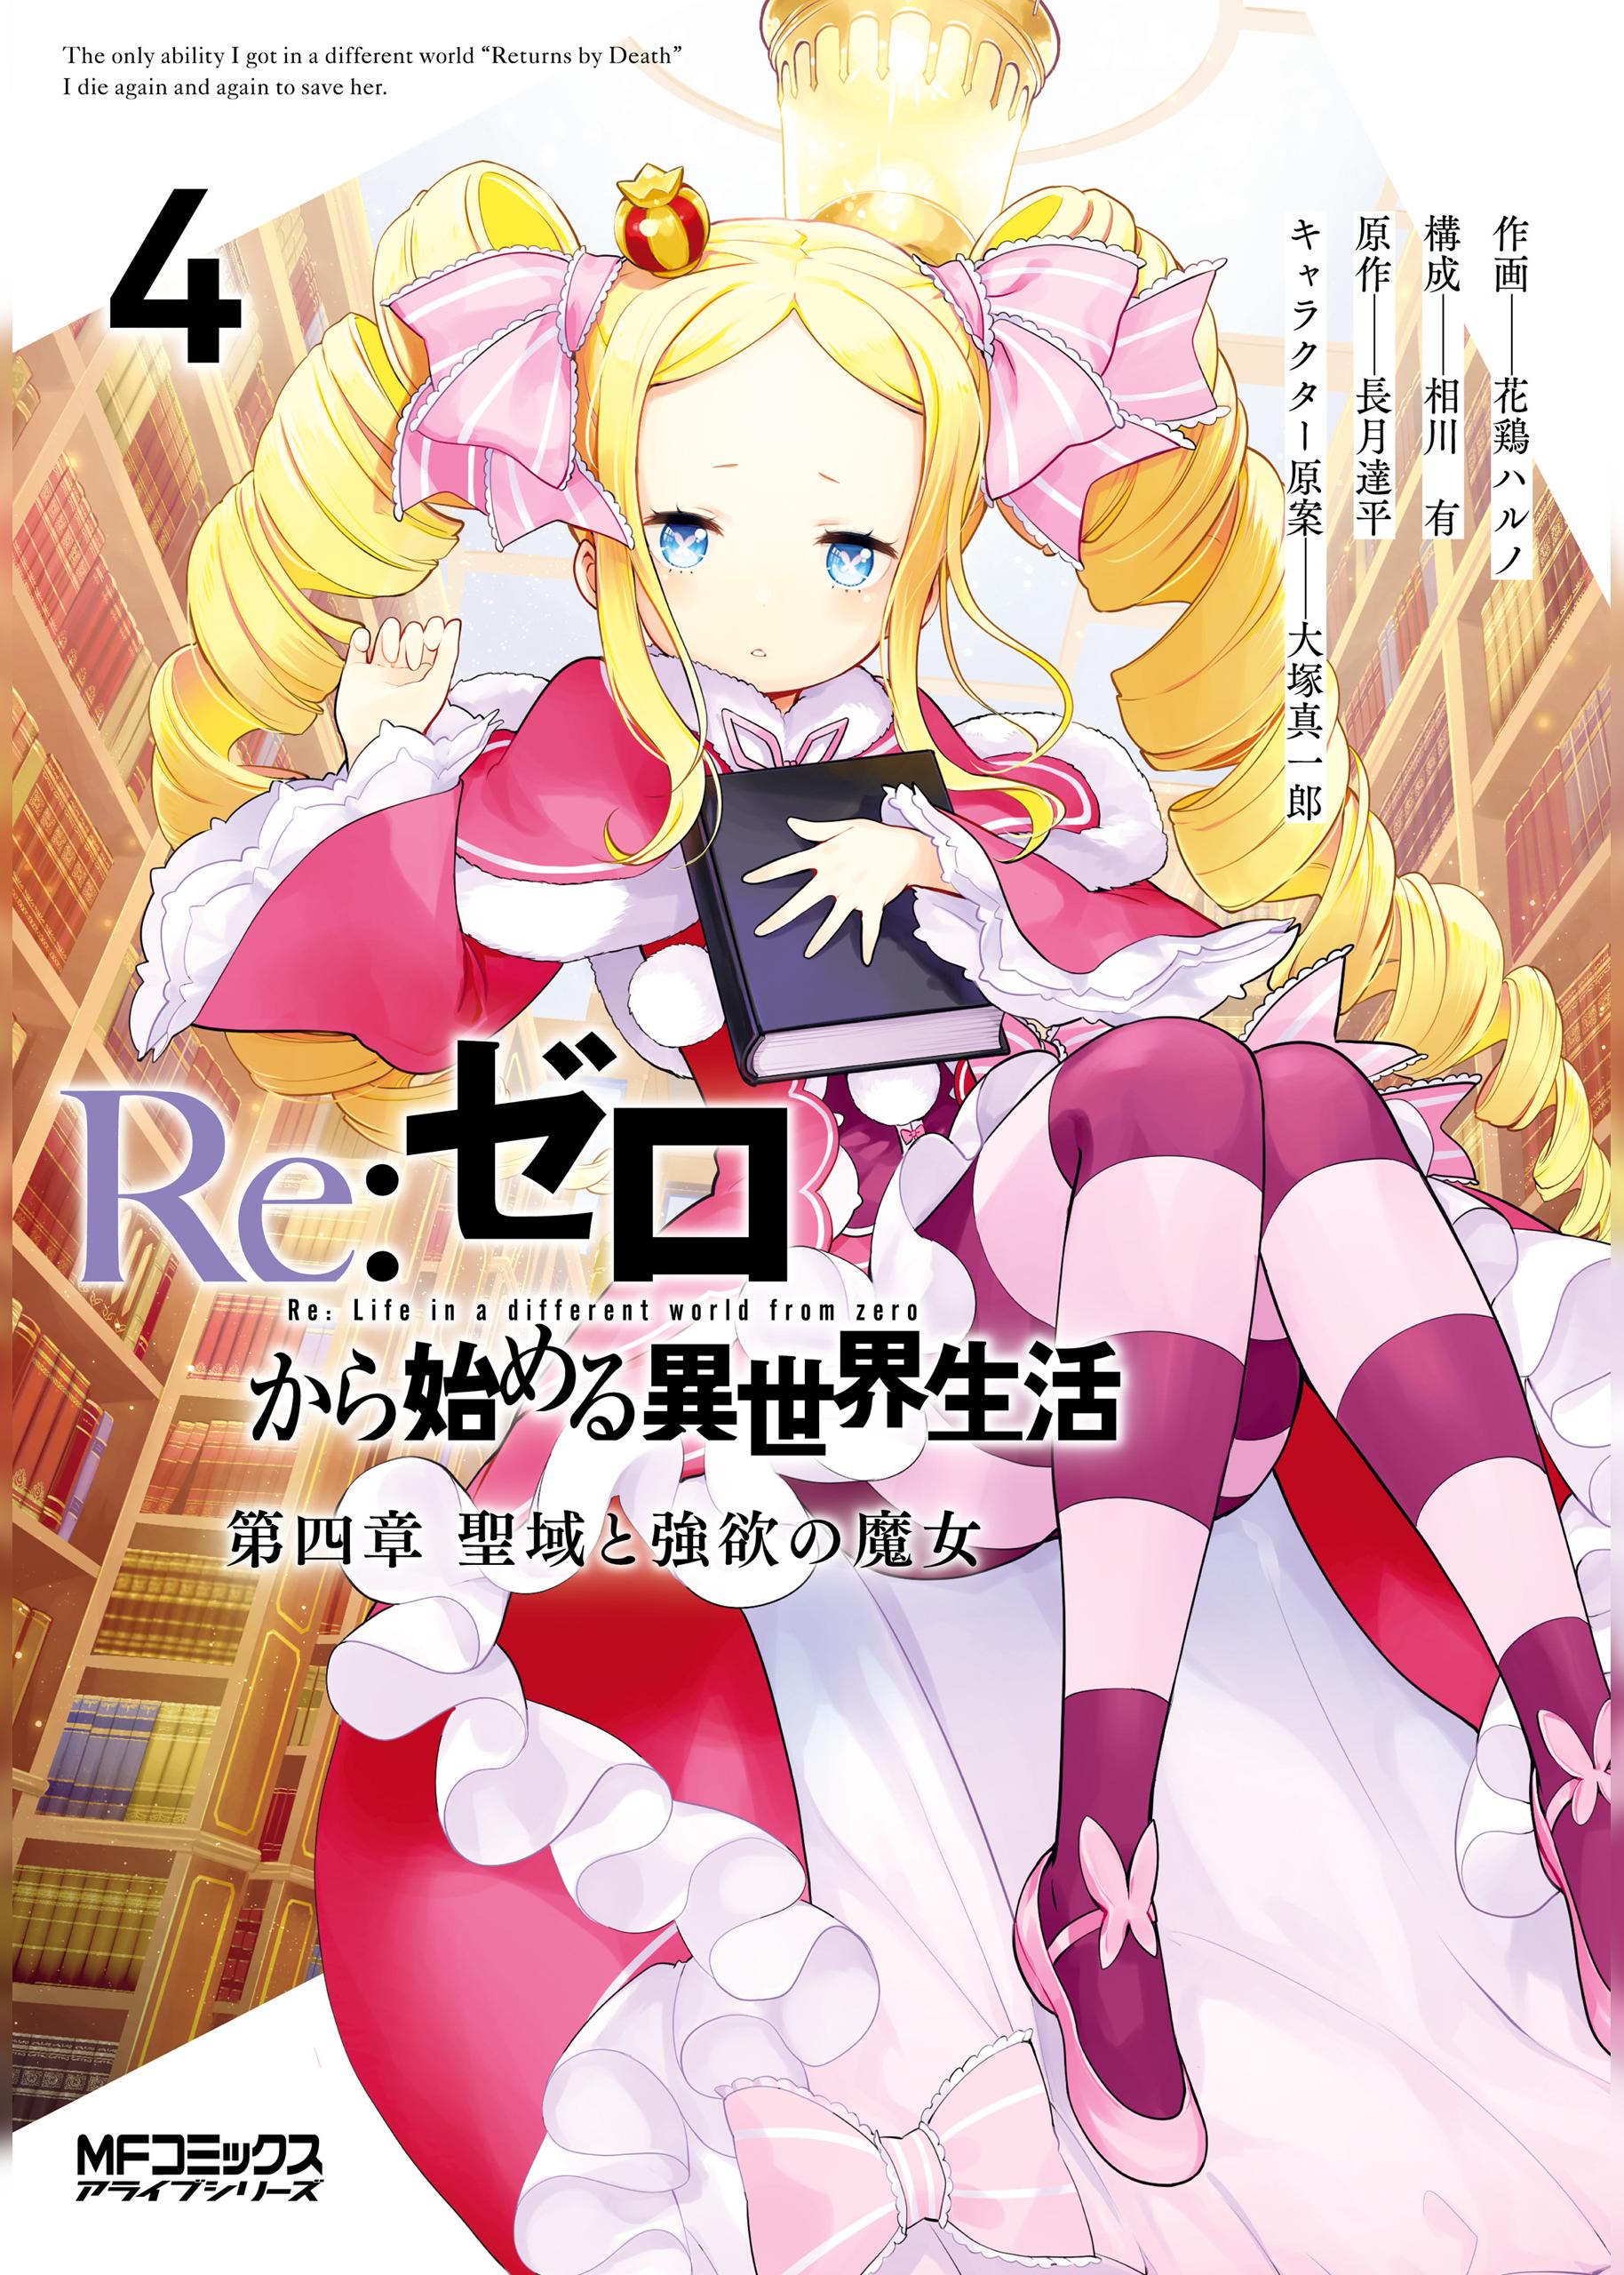 Re:Zero Kara Hajimeru Isekai Seikatsu, Wiki, RPG de Magia